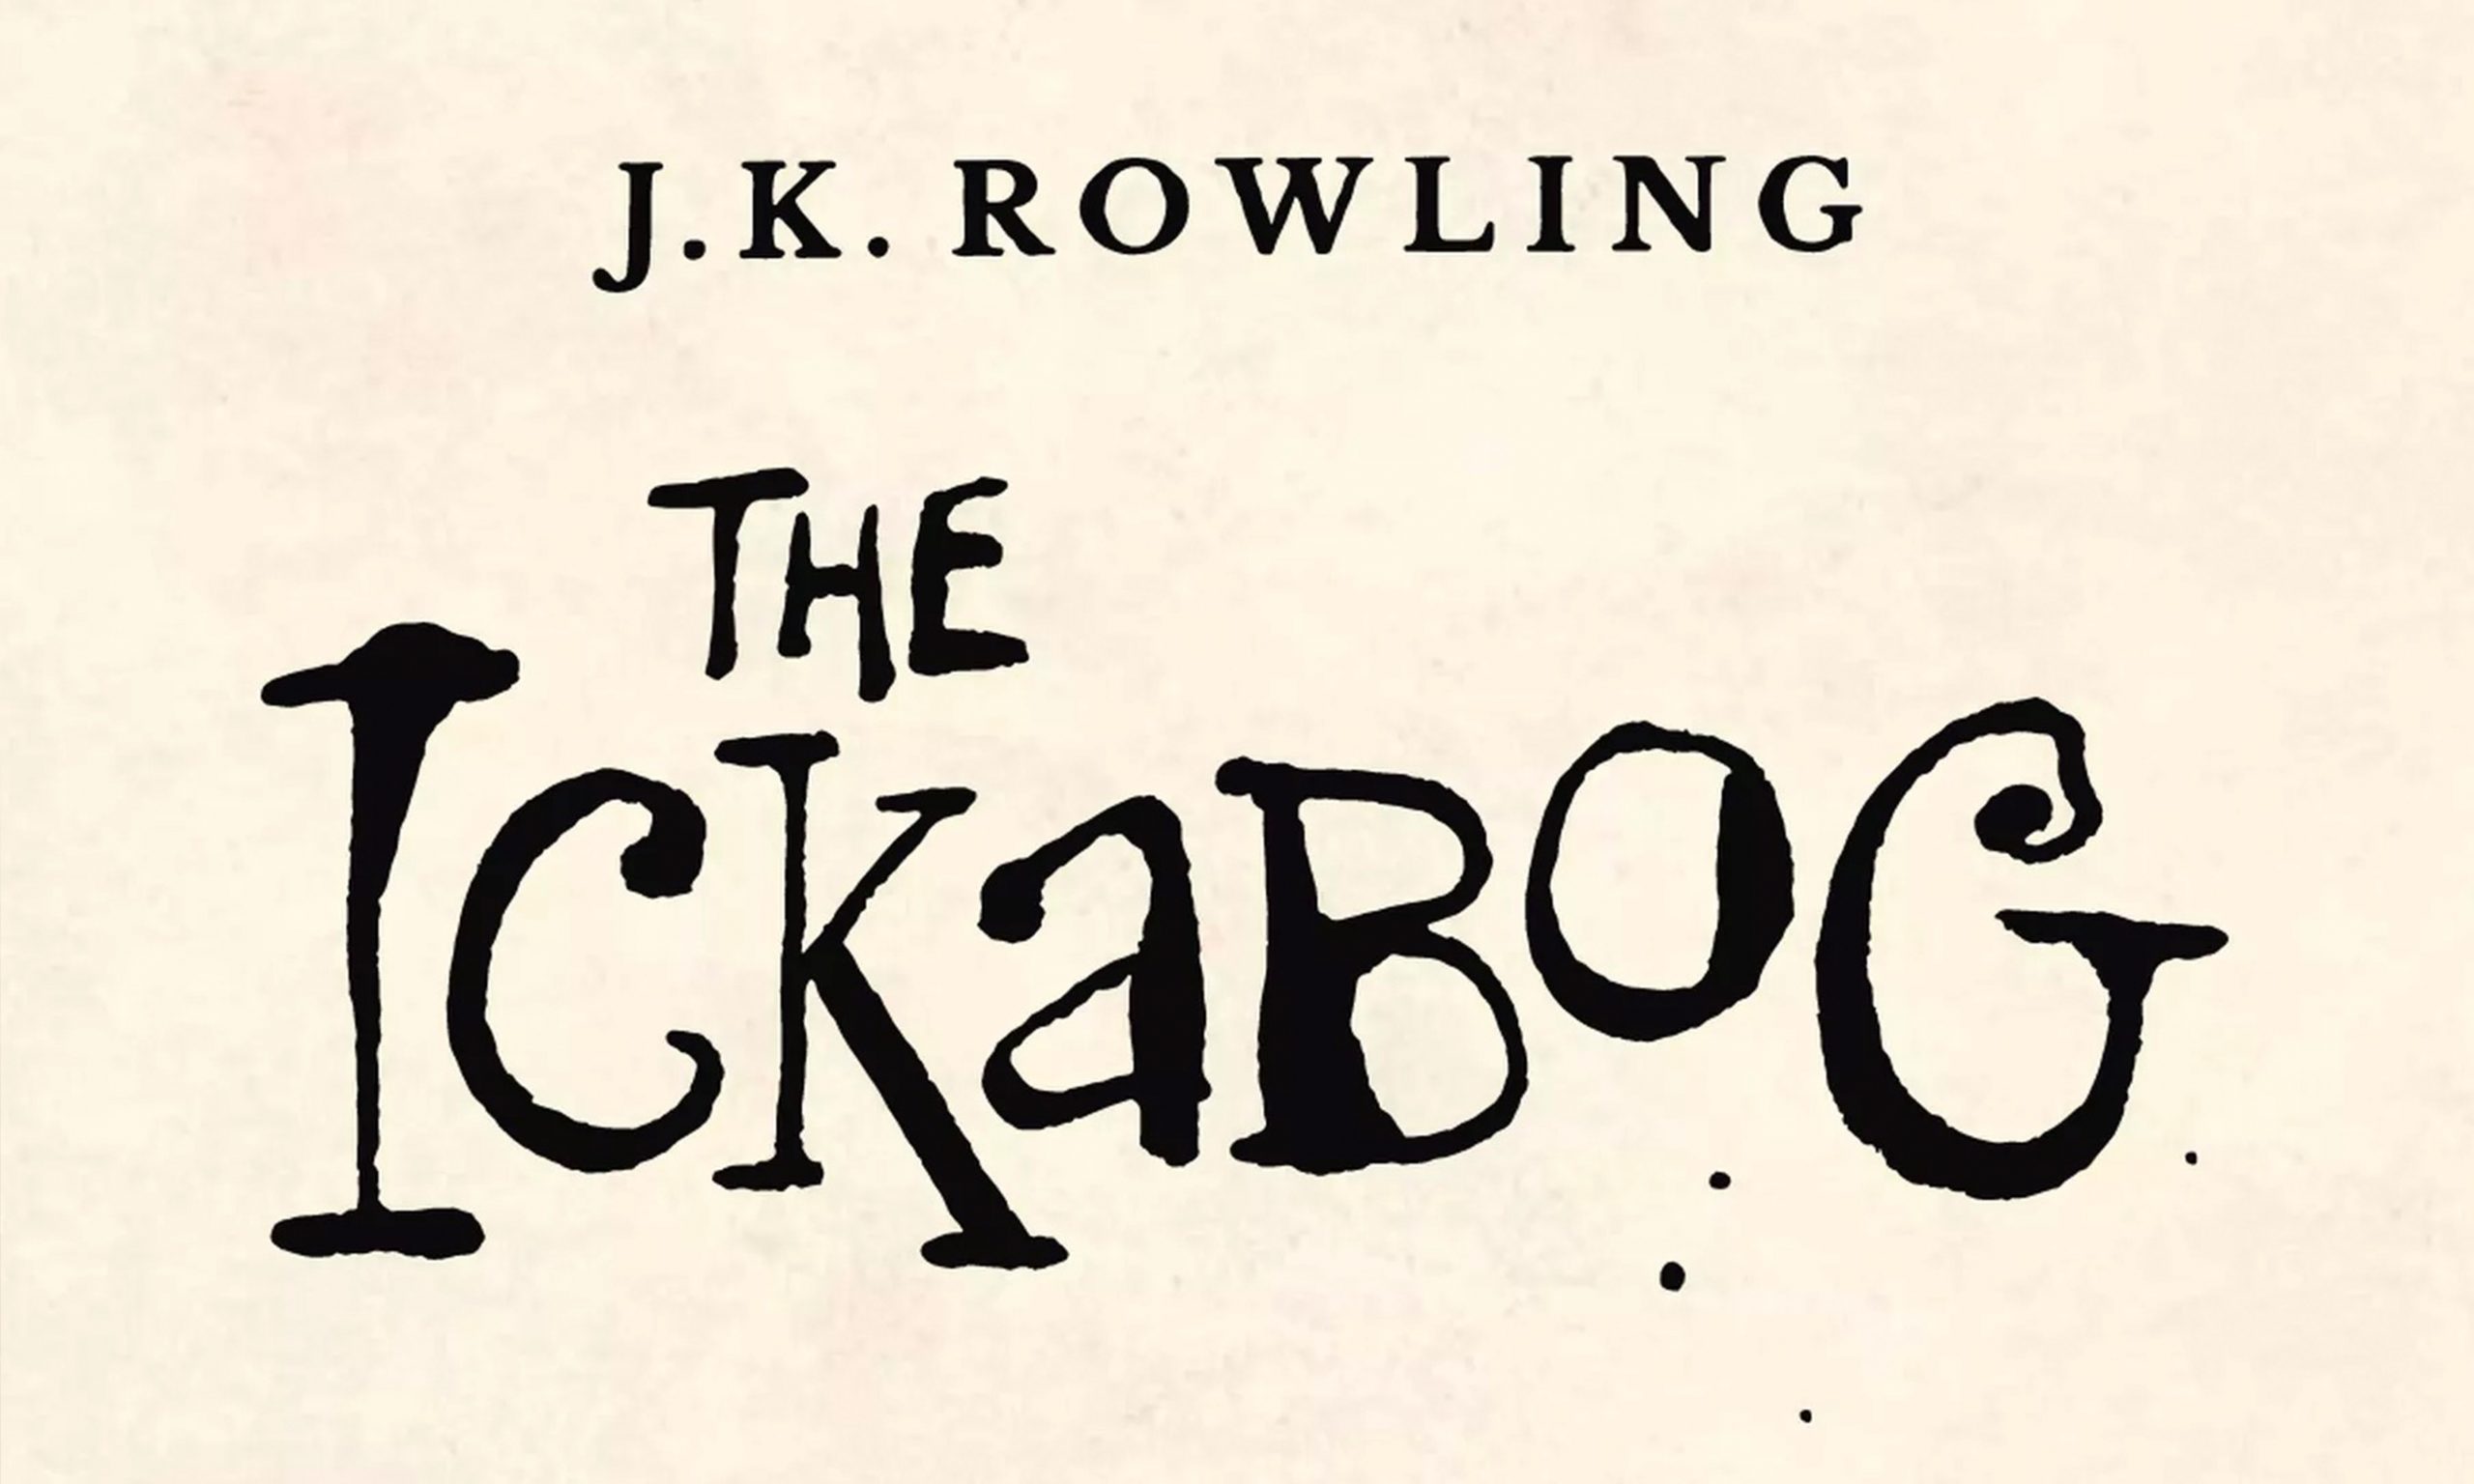 J.K. 罗琳将出新书《The Ickabog》